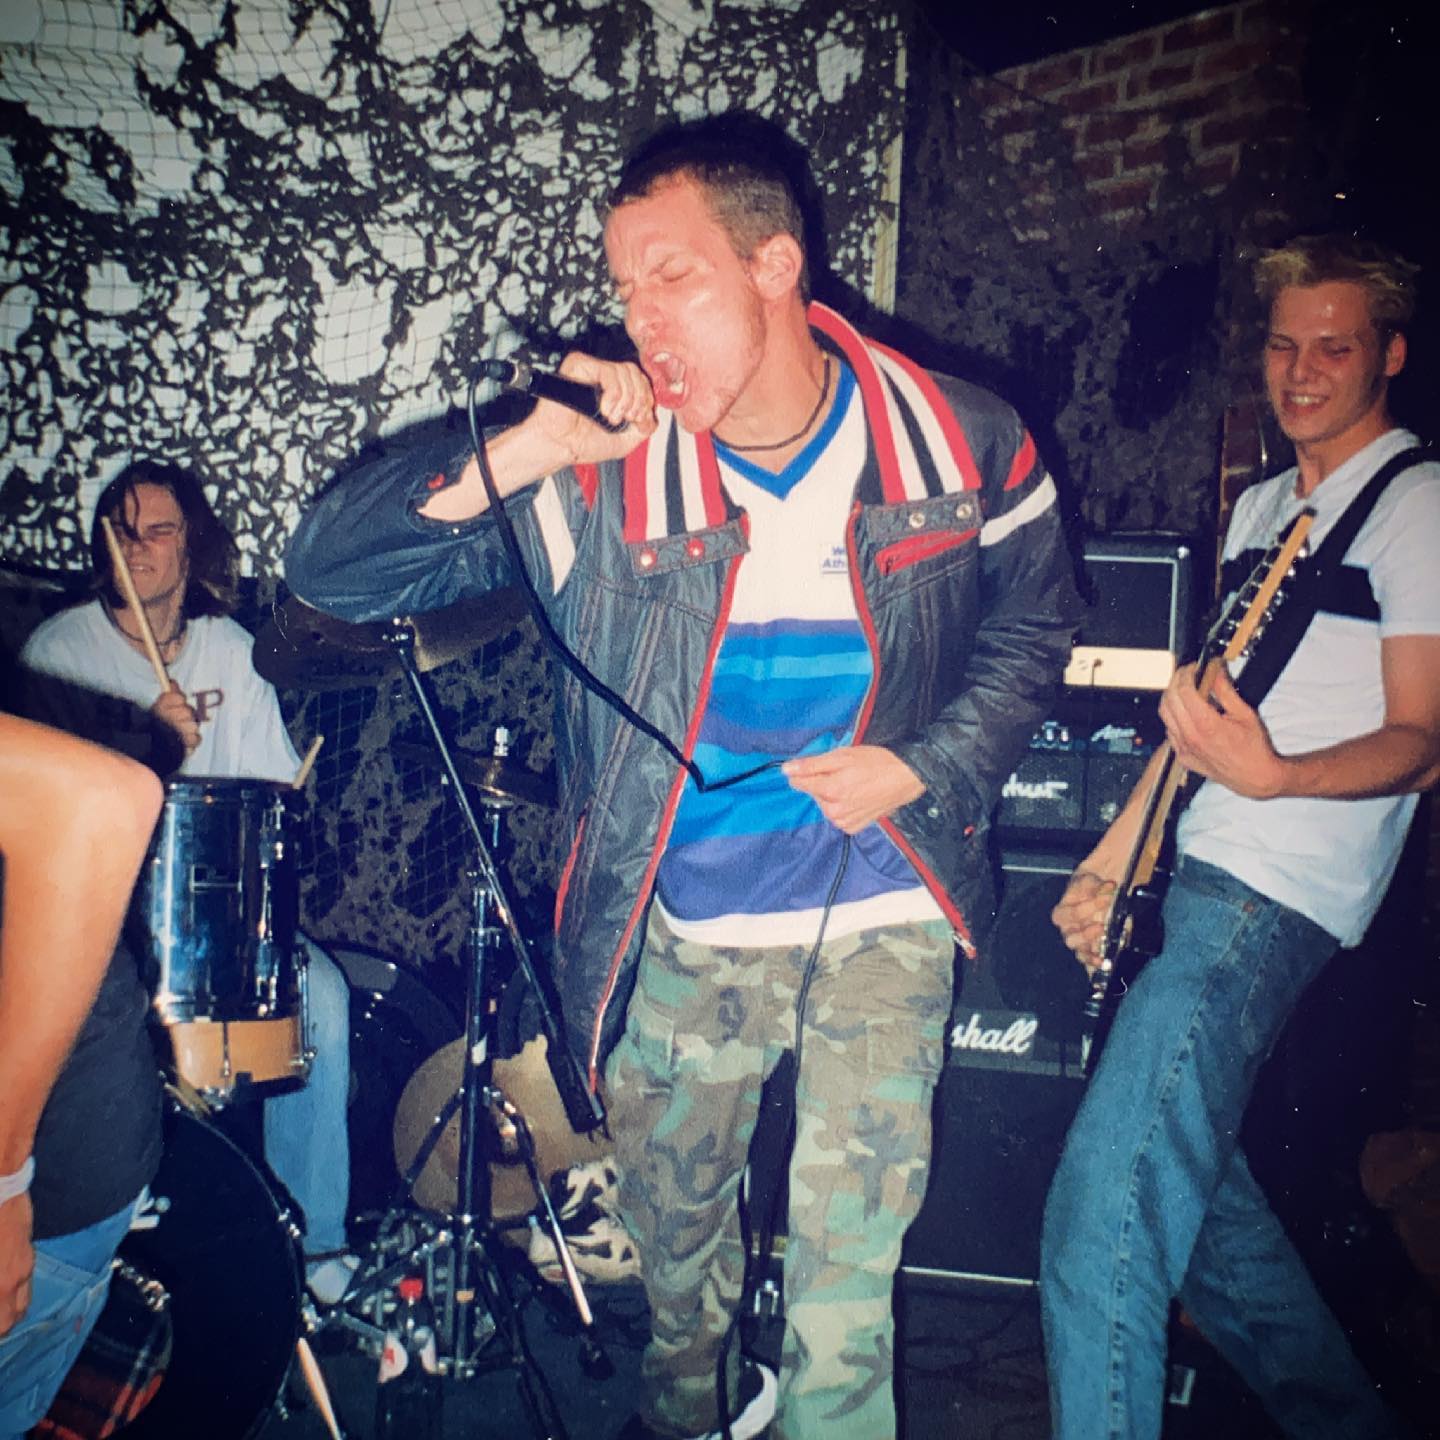 Systral - Tinck Hoogeveen (NL) - 18 October 1997 #hardcore #metal #gigpic by @twentylandcrew